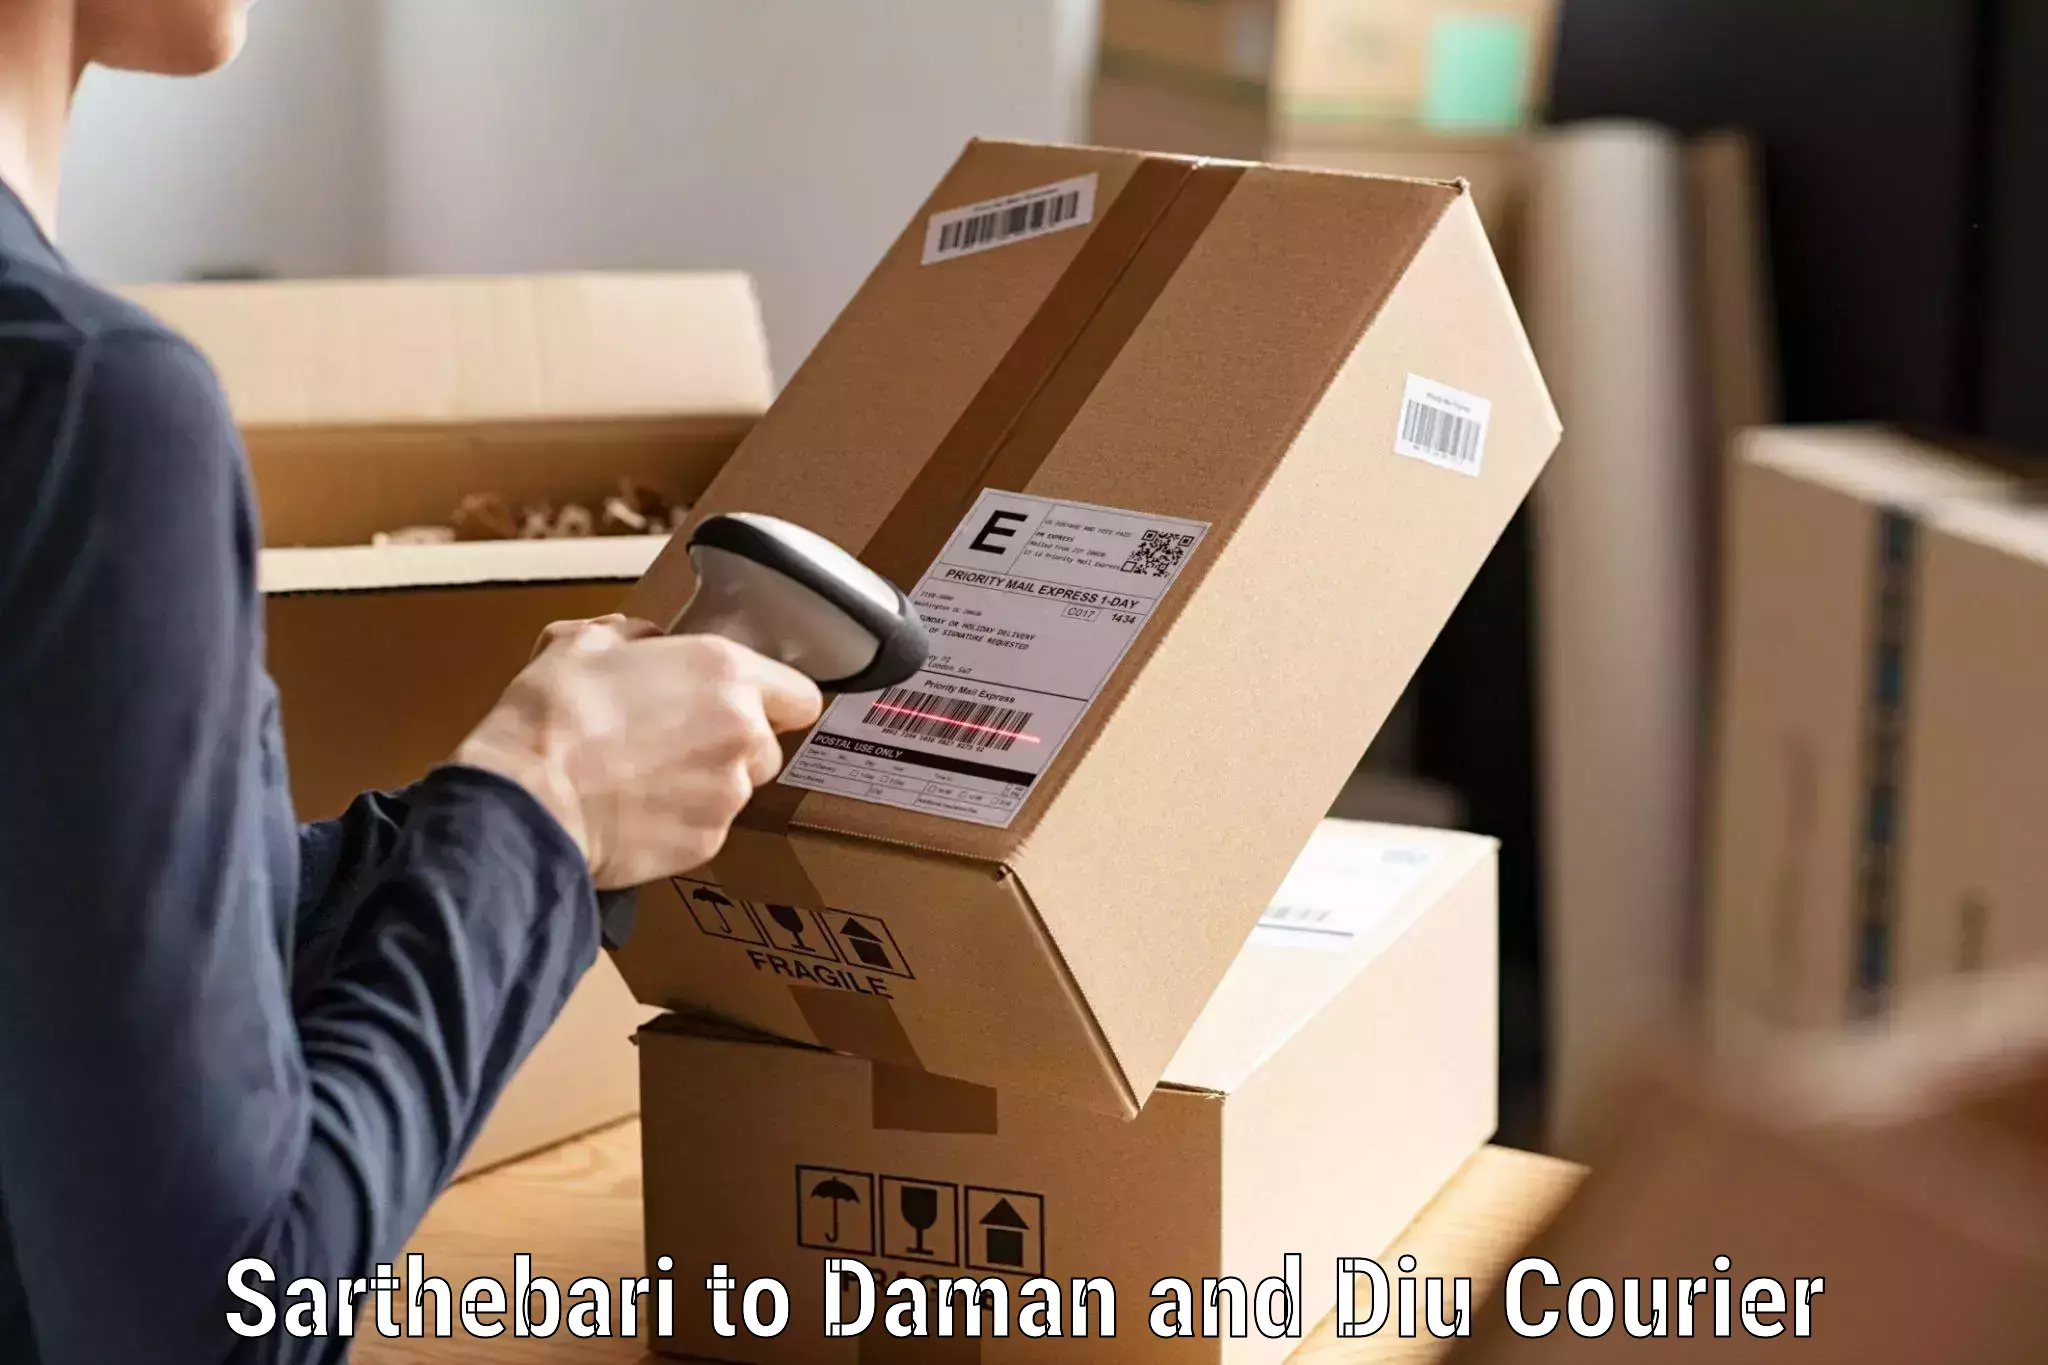 Business shipping needs Sarthebari to Daman and Diu